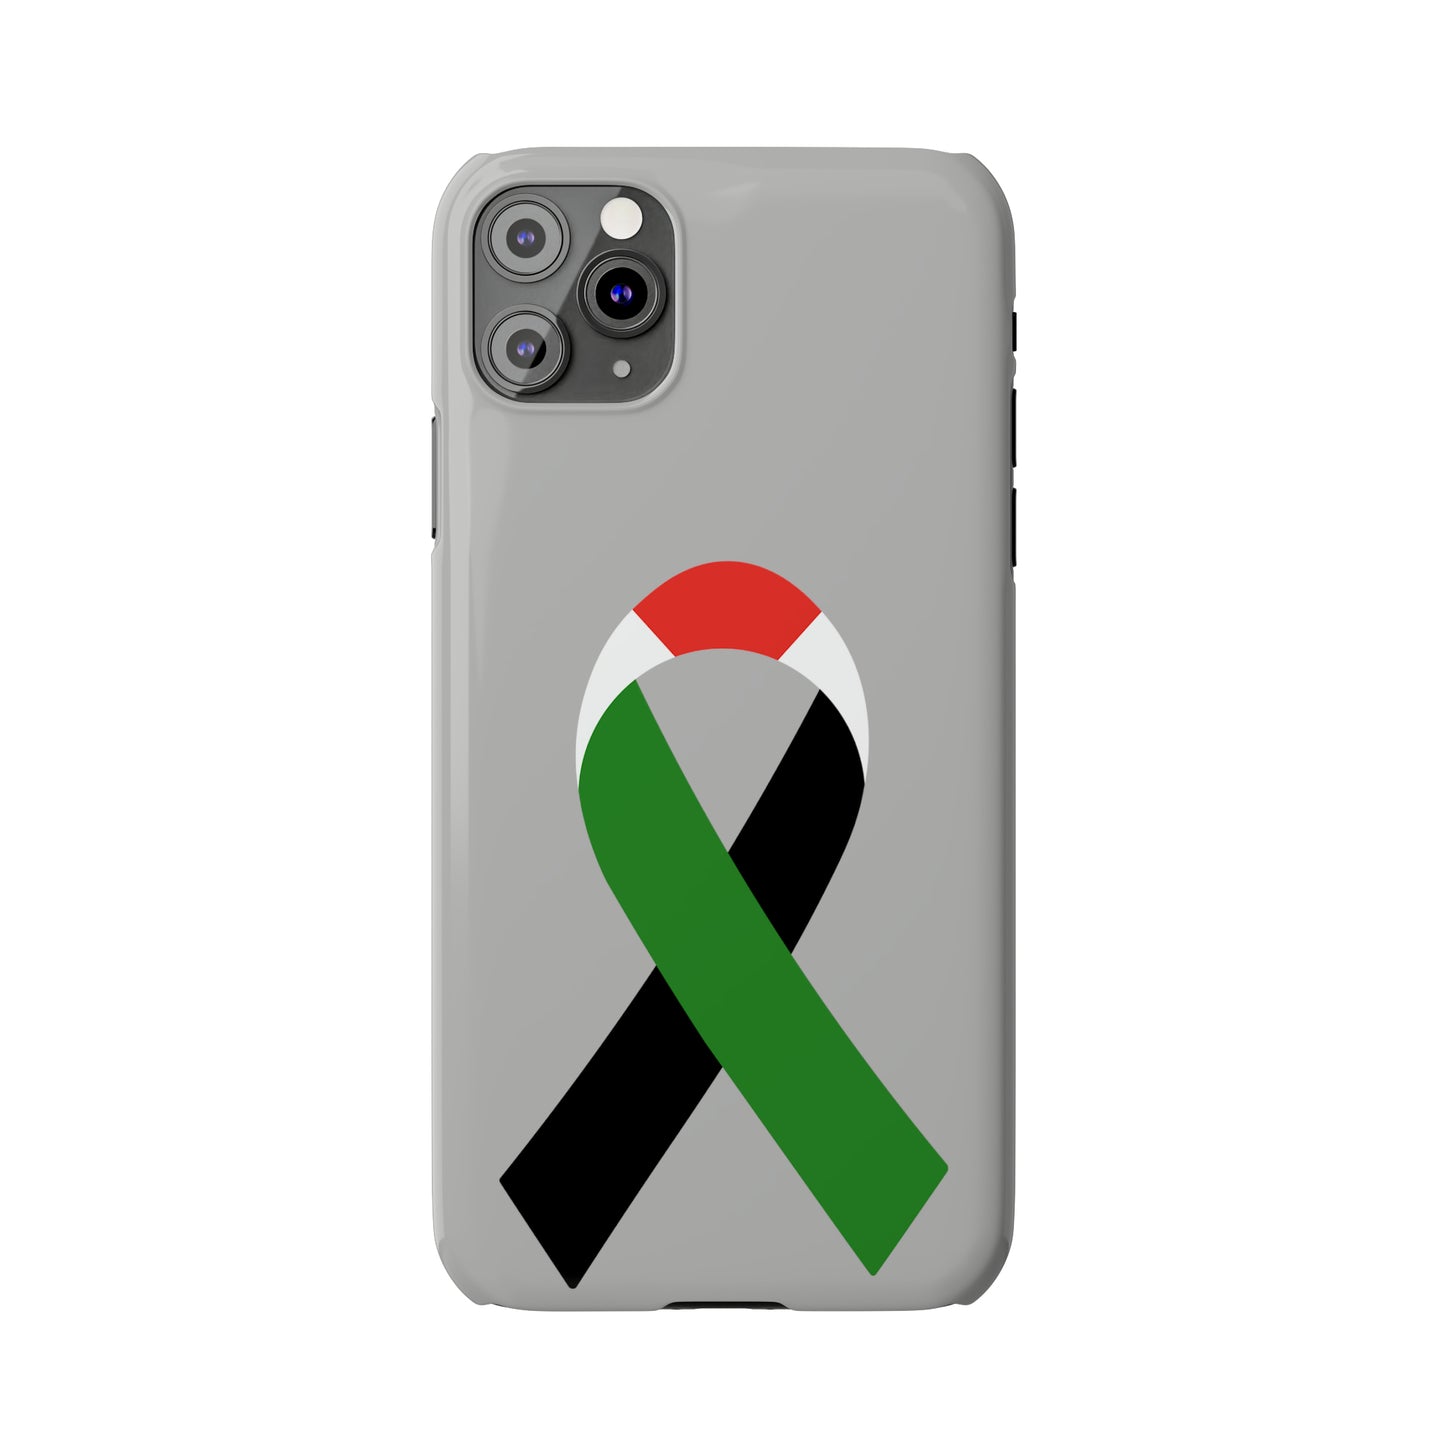 Slim Phone Cases